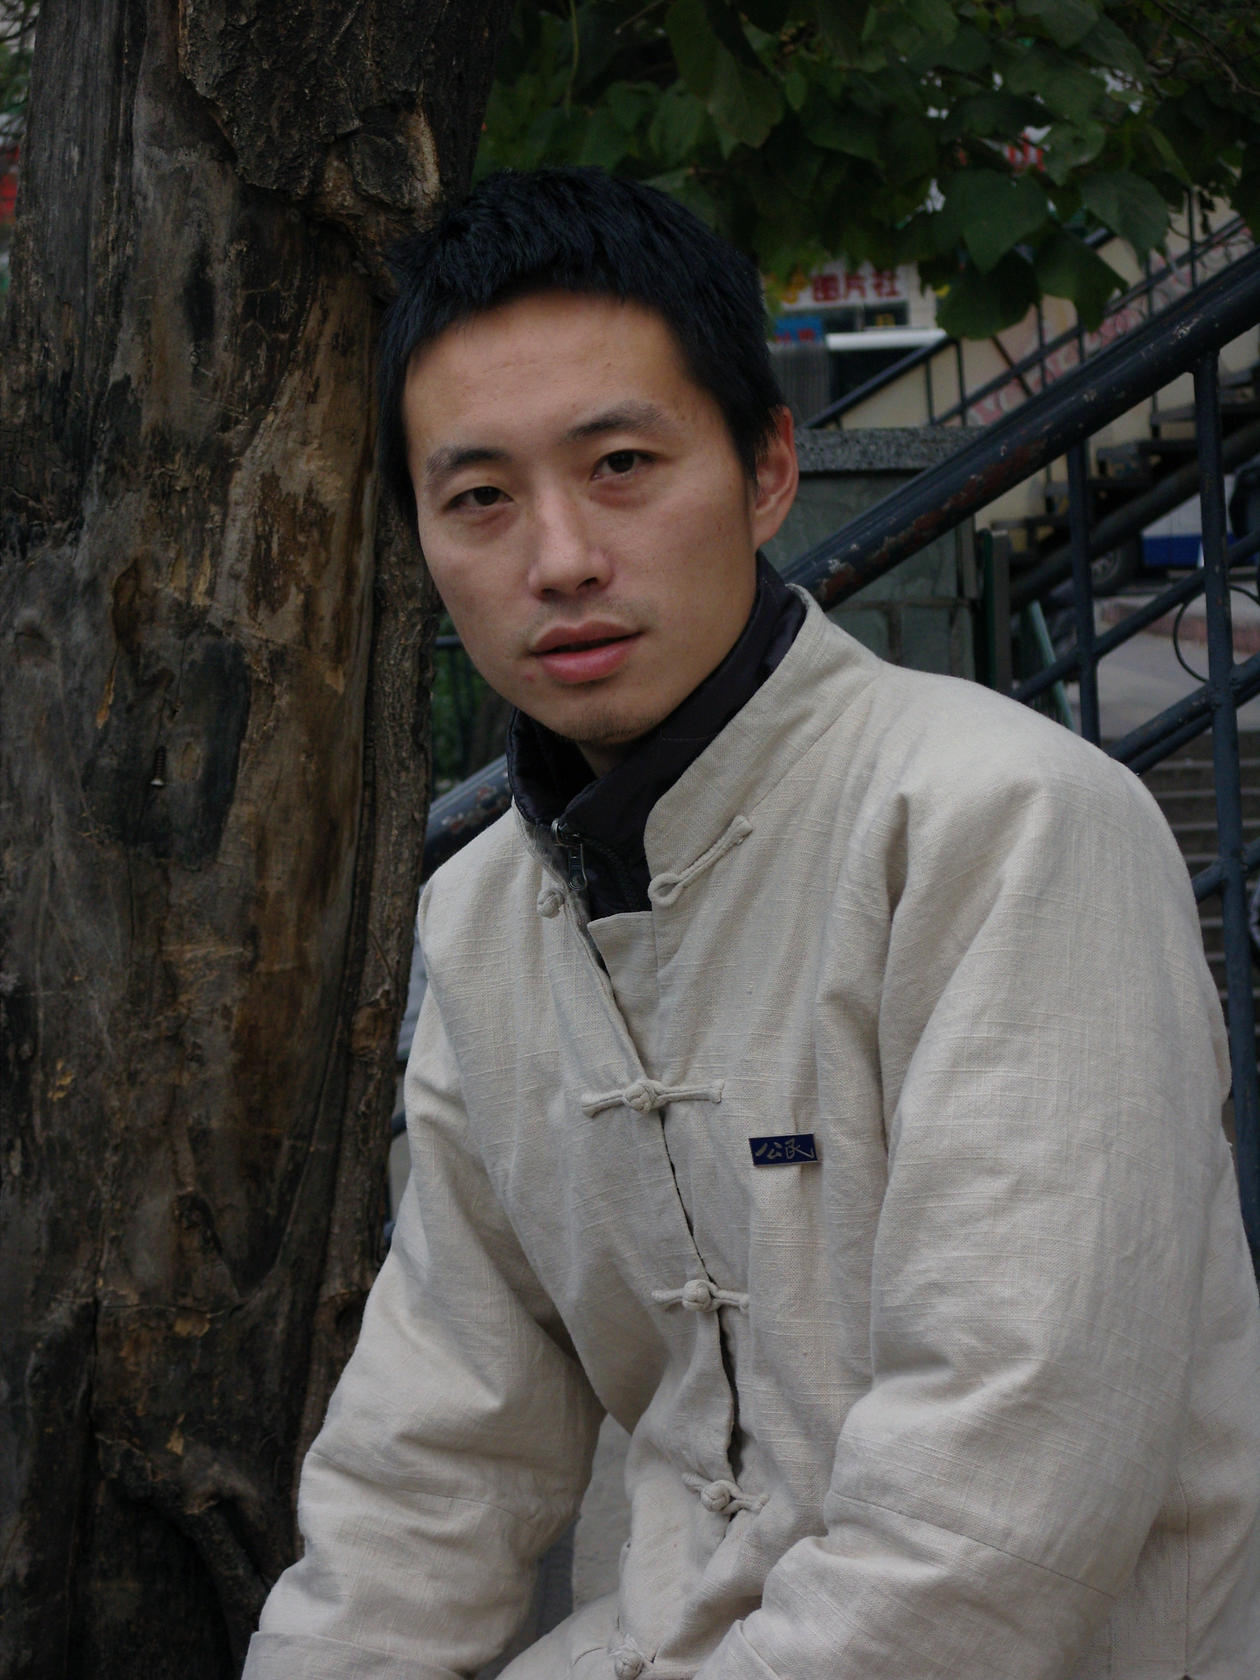 Zhang Kun